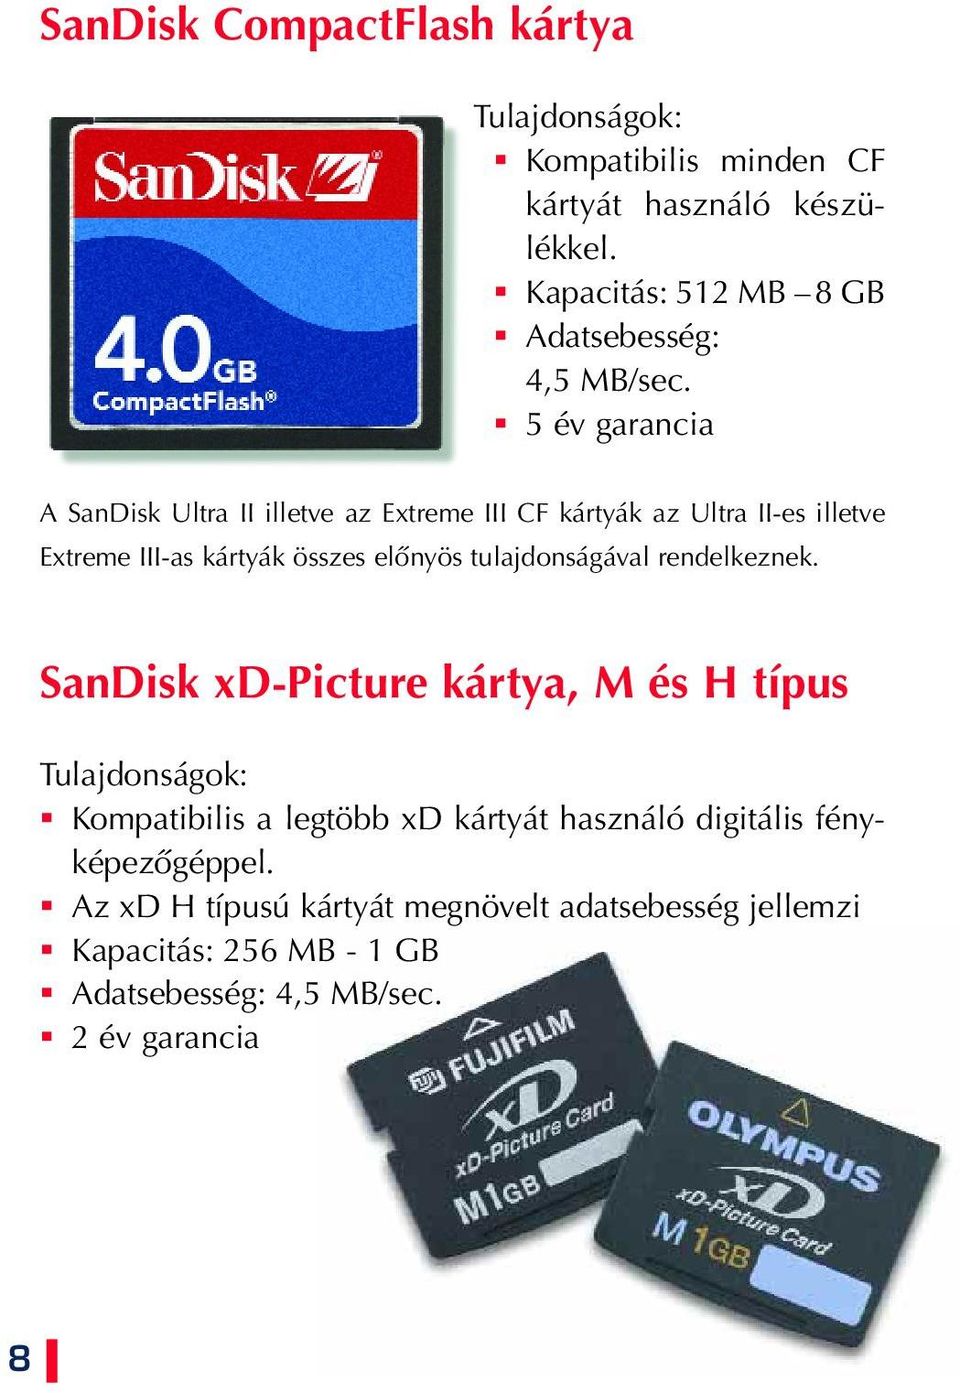 5 év garancia A SanDisk Ultra II illetve az Extreme III CF kártyák az Ultra II-es illetve Extreme III-as kártyák összes elônyös